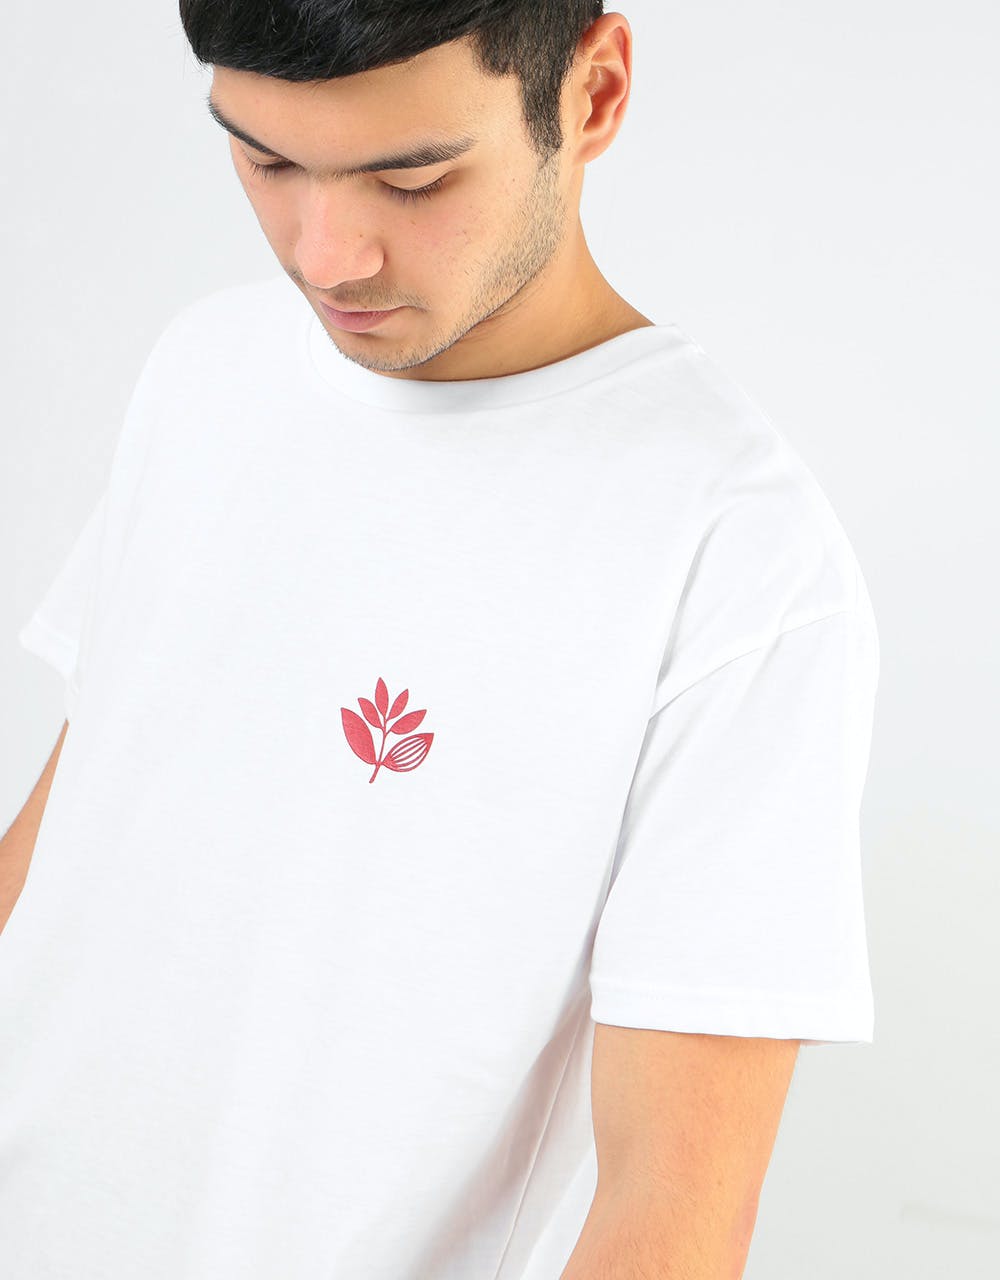 Magenta Heart Plant T-Shirt - White